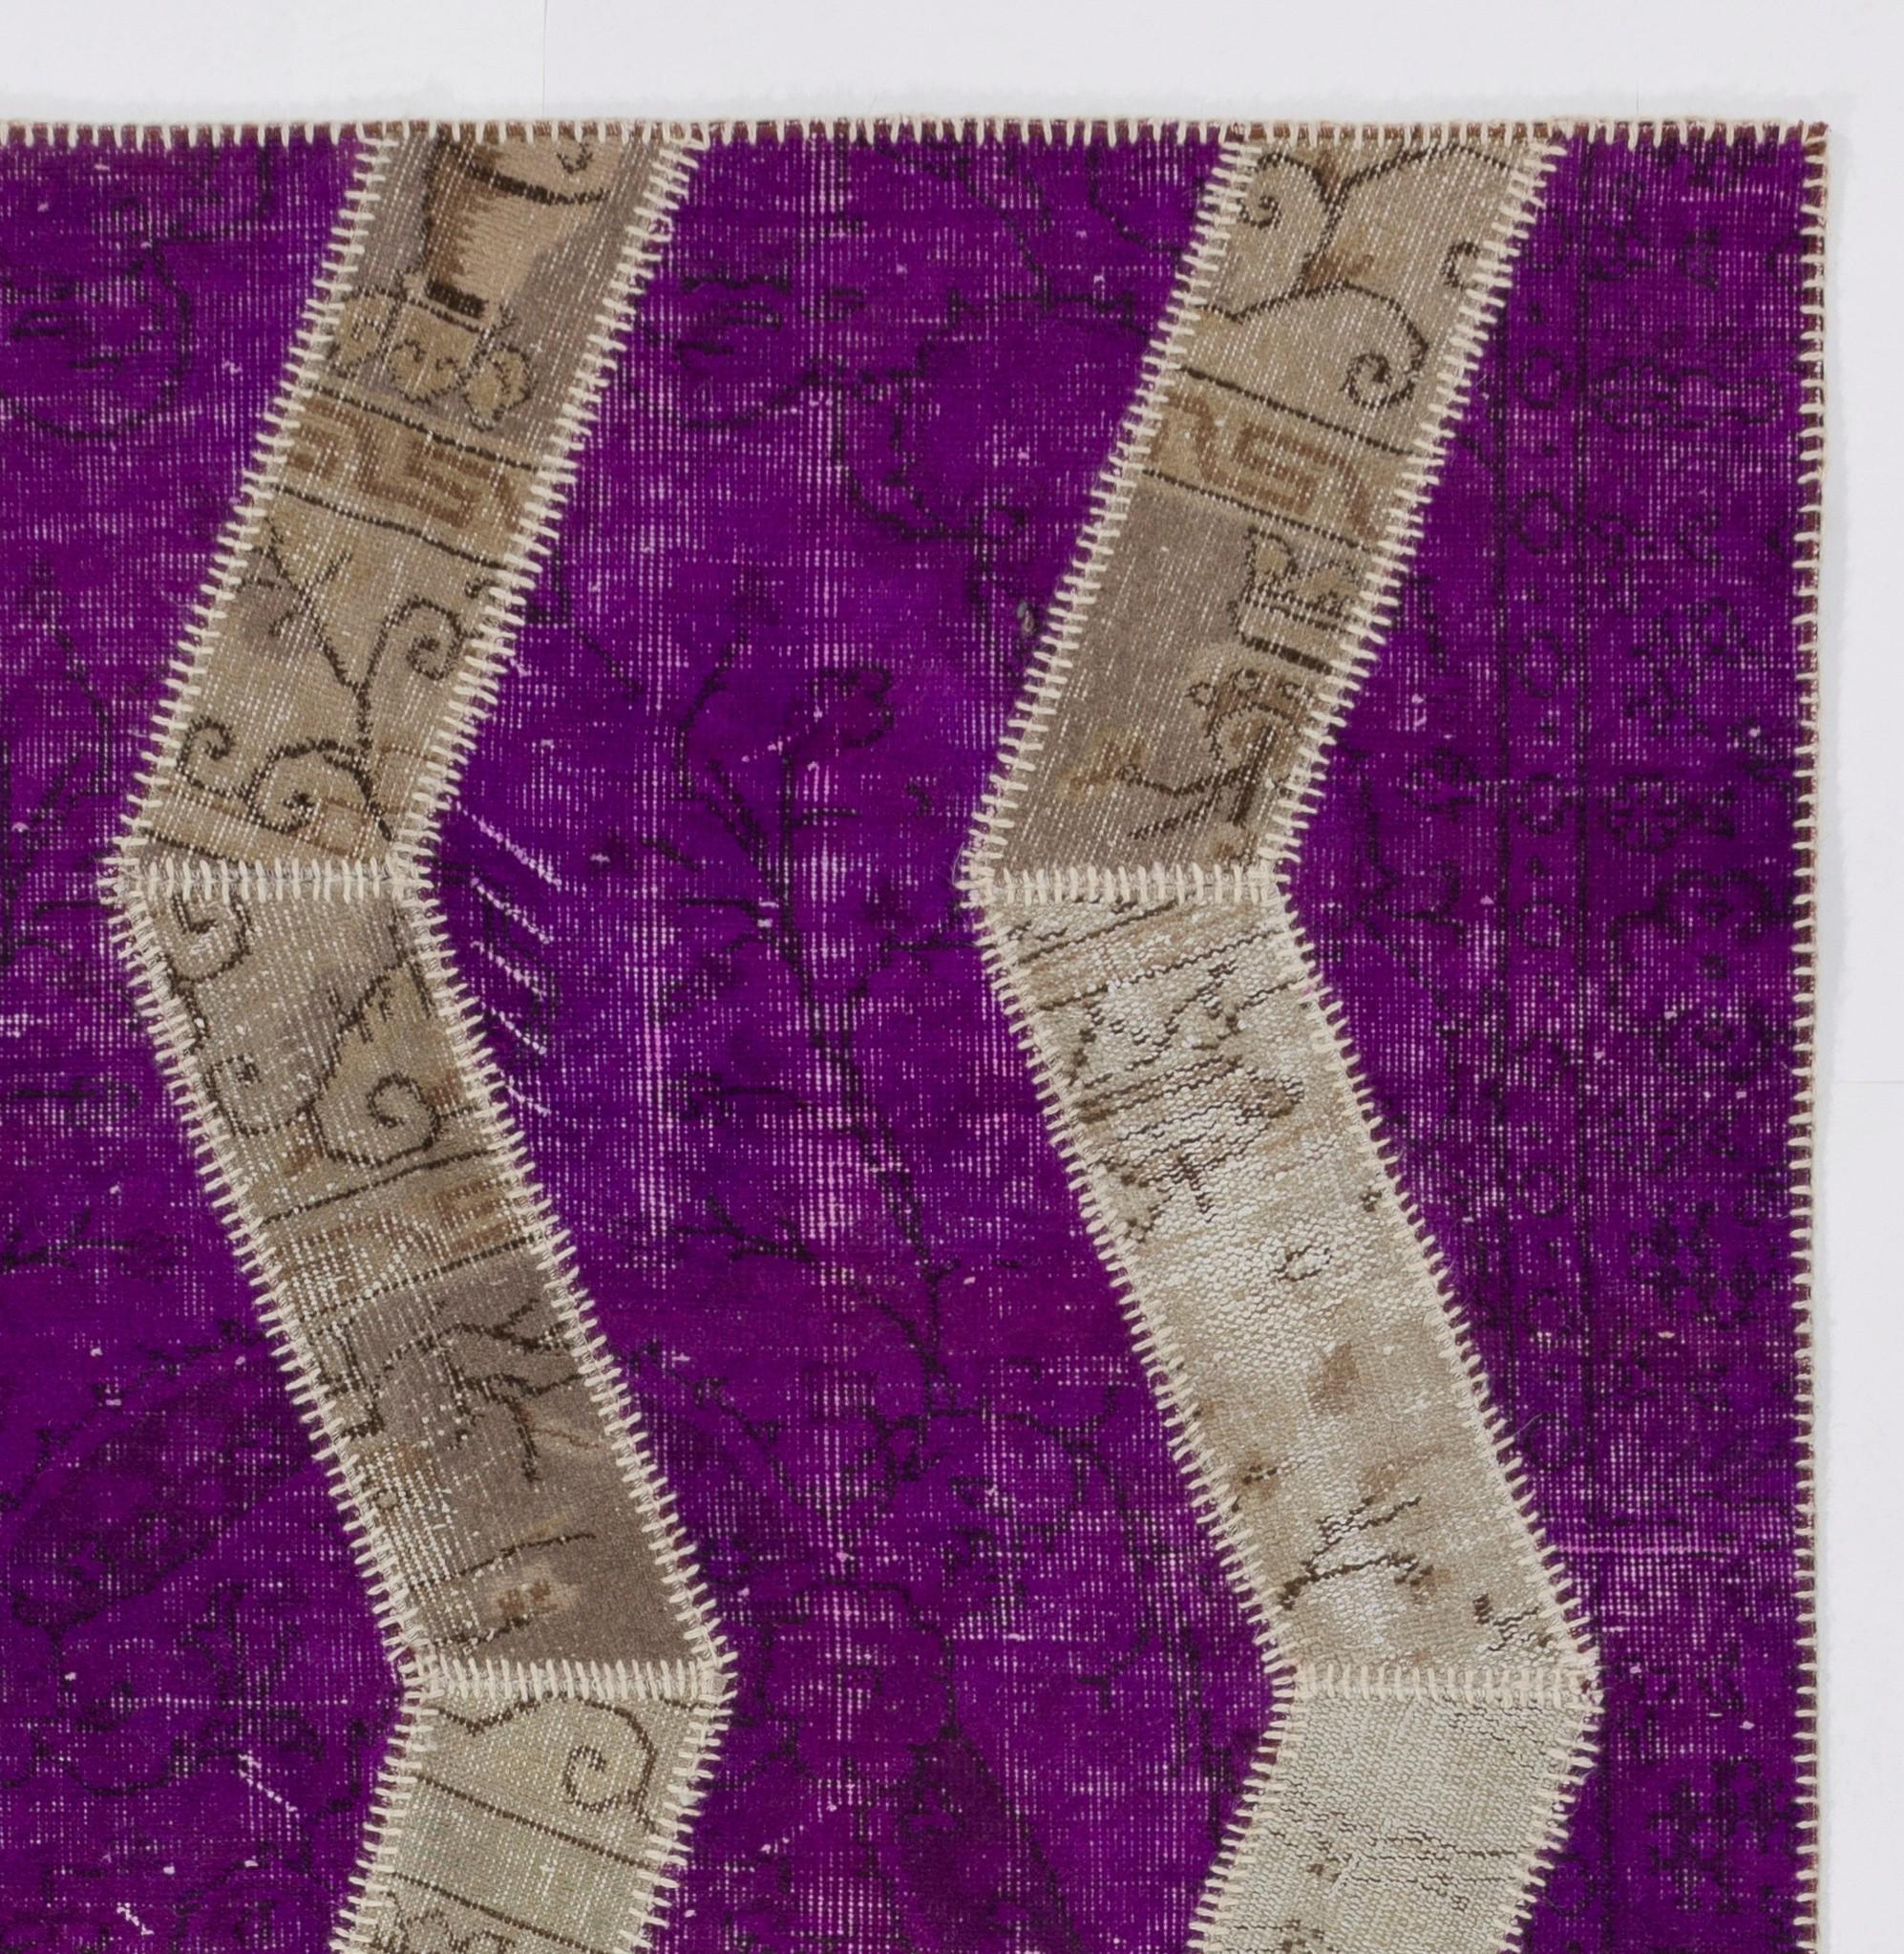 Turkish Zig Zag Design Patchwork Rug, Purple, Beige & Sand Colors. Custom Modern Carpet For Sale